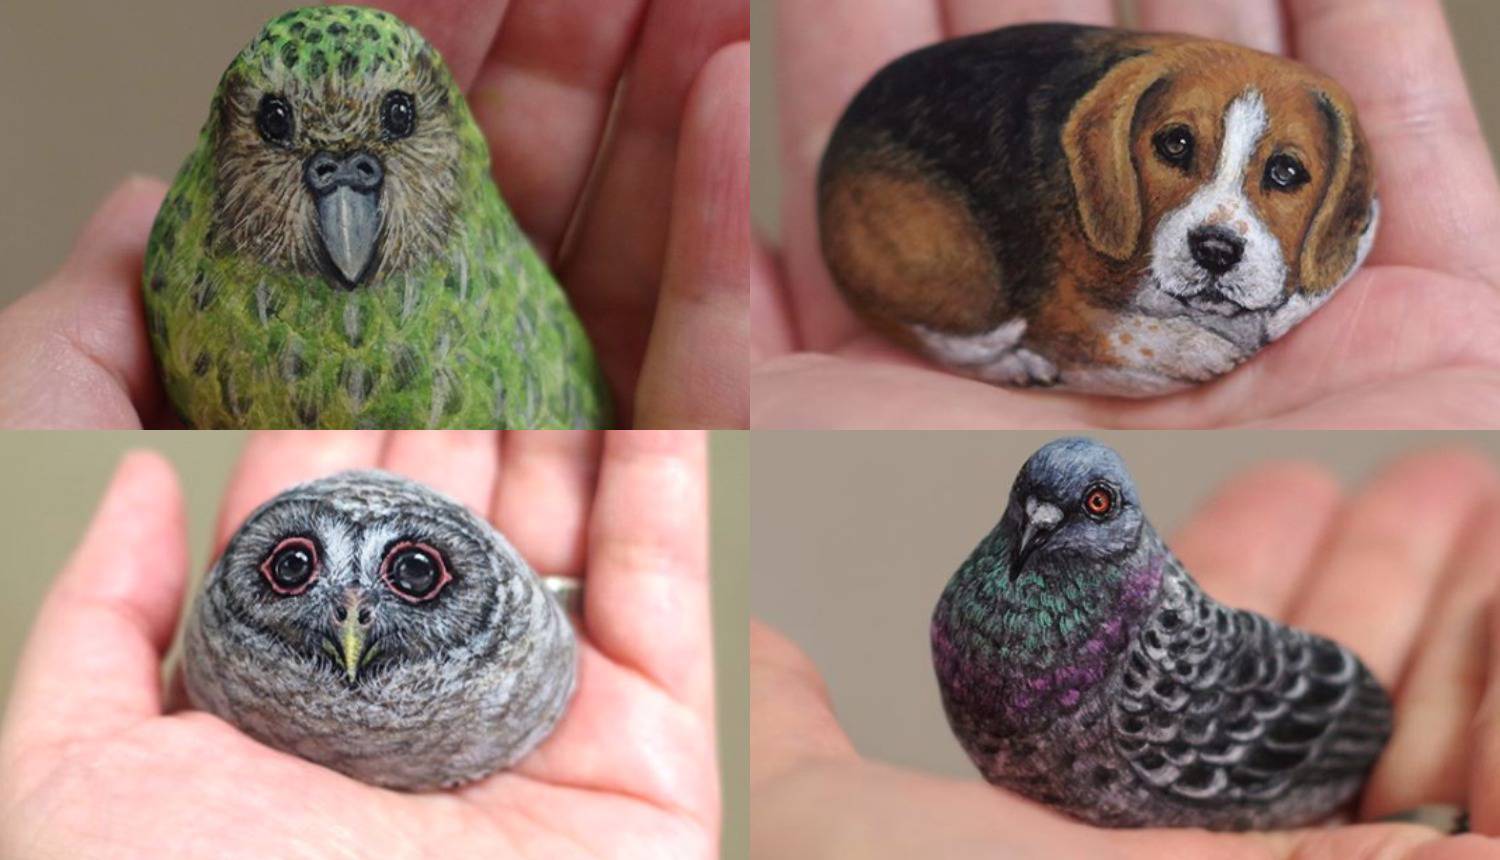 Japanska umjetnica kamenje pretvara u preslatke životinjice